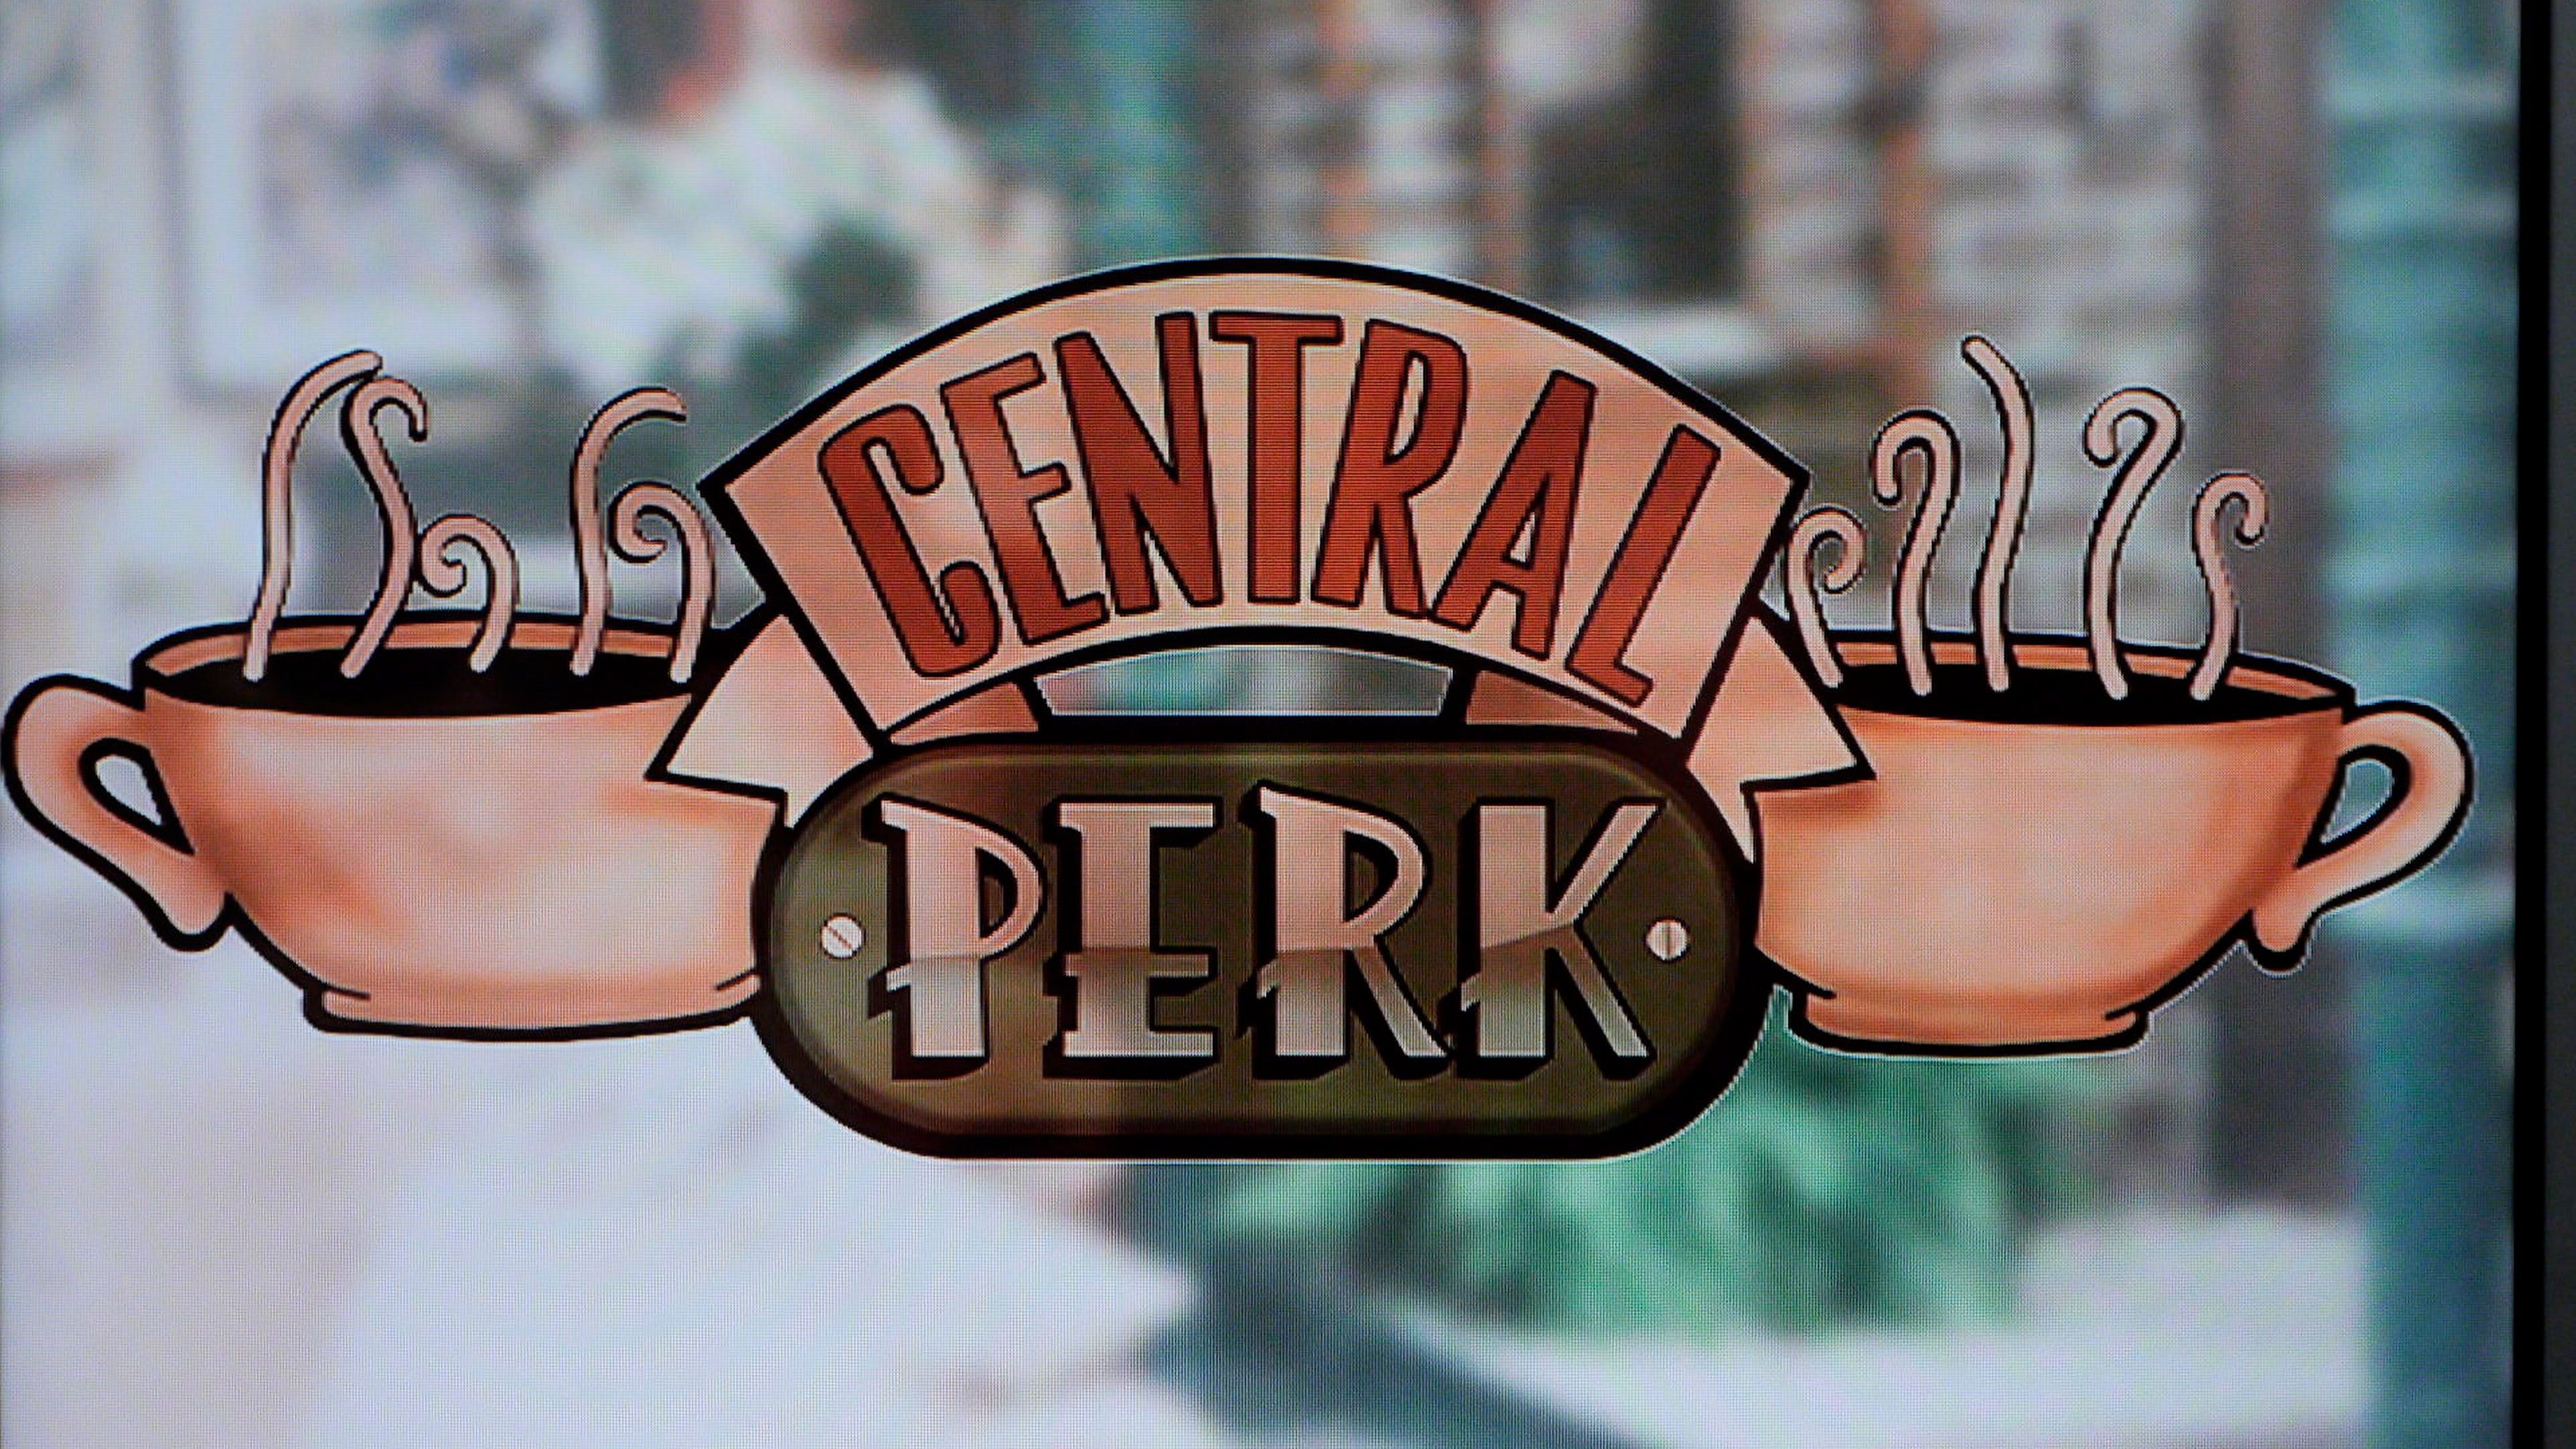 El Central Perk de 'Friends' abrirá… en Madrid